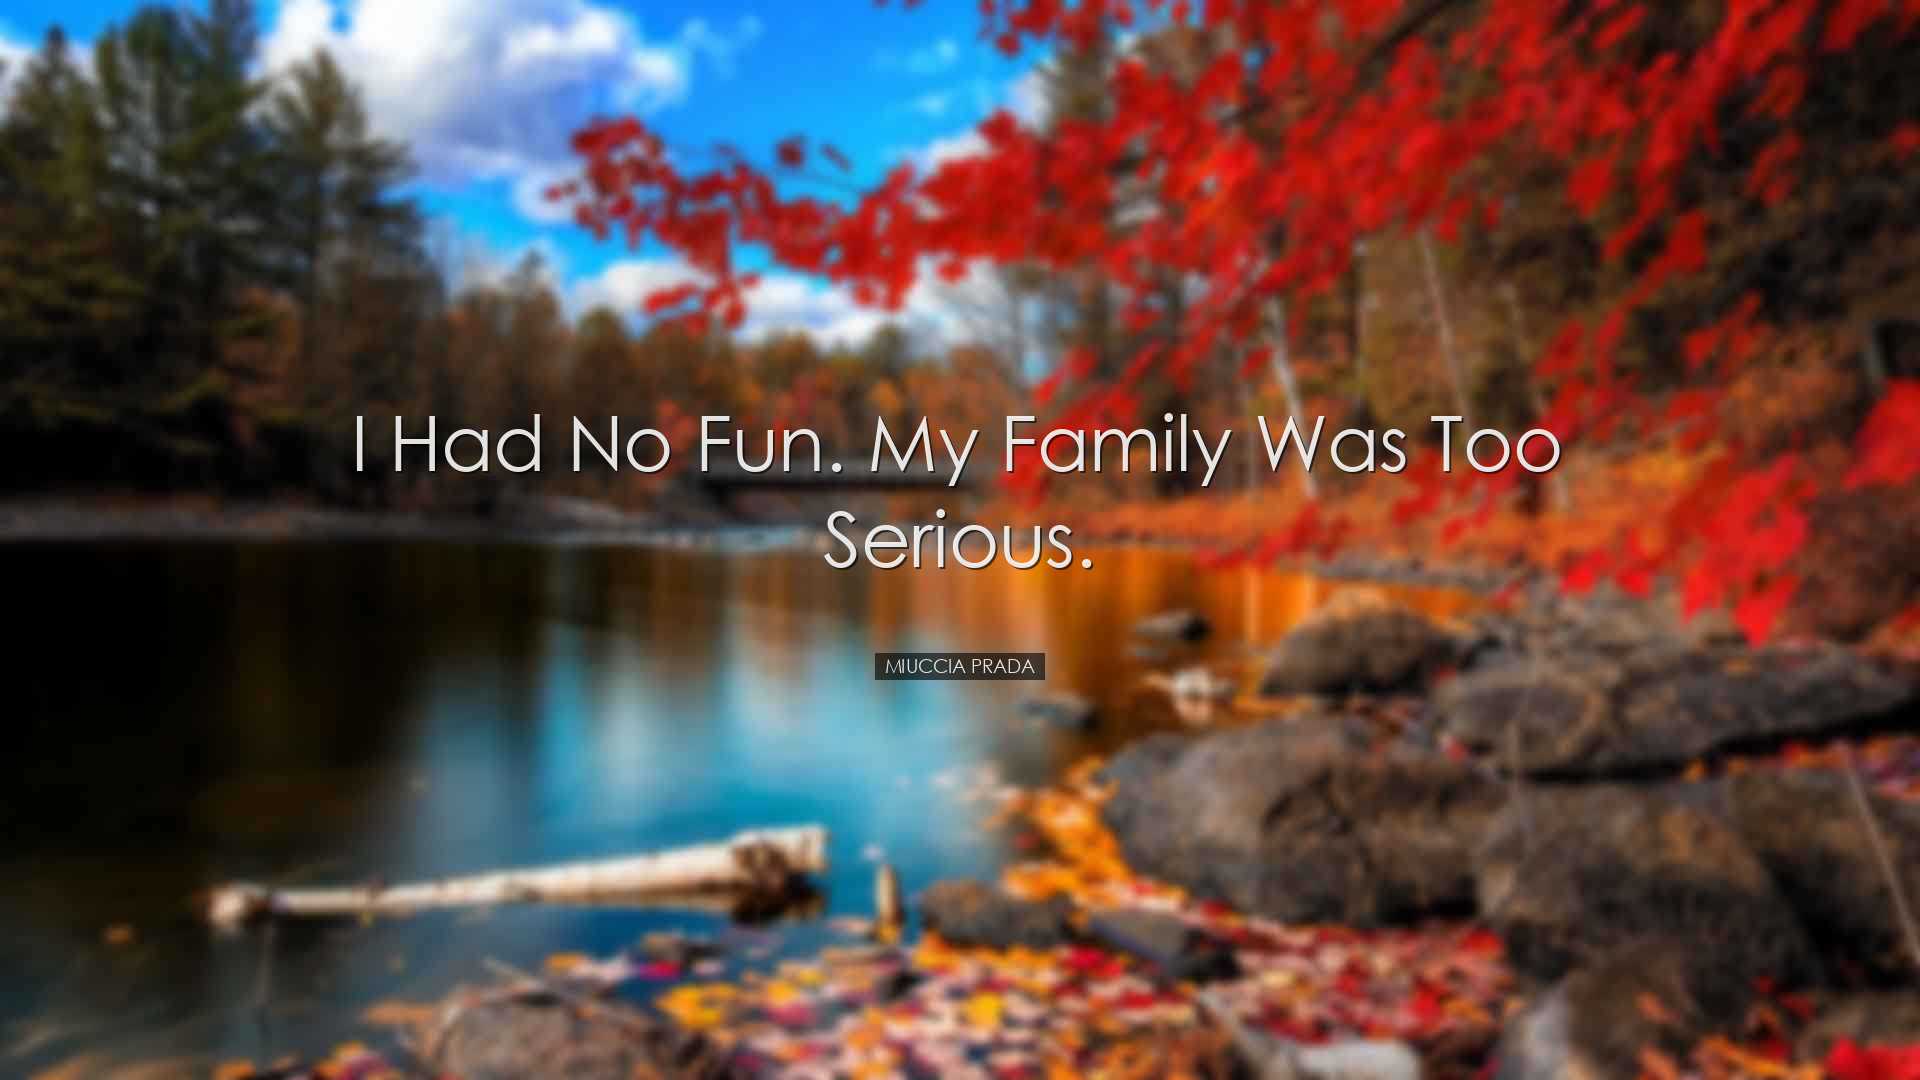 I had no fun. My family was too serious. - Miuccia Prada